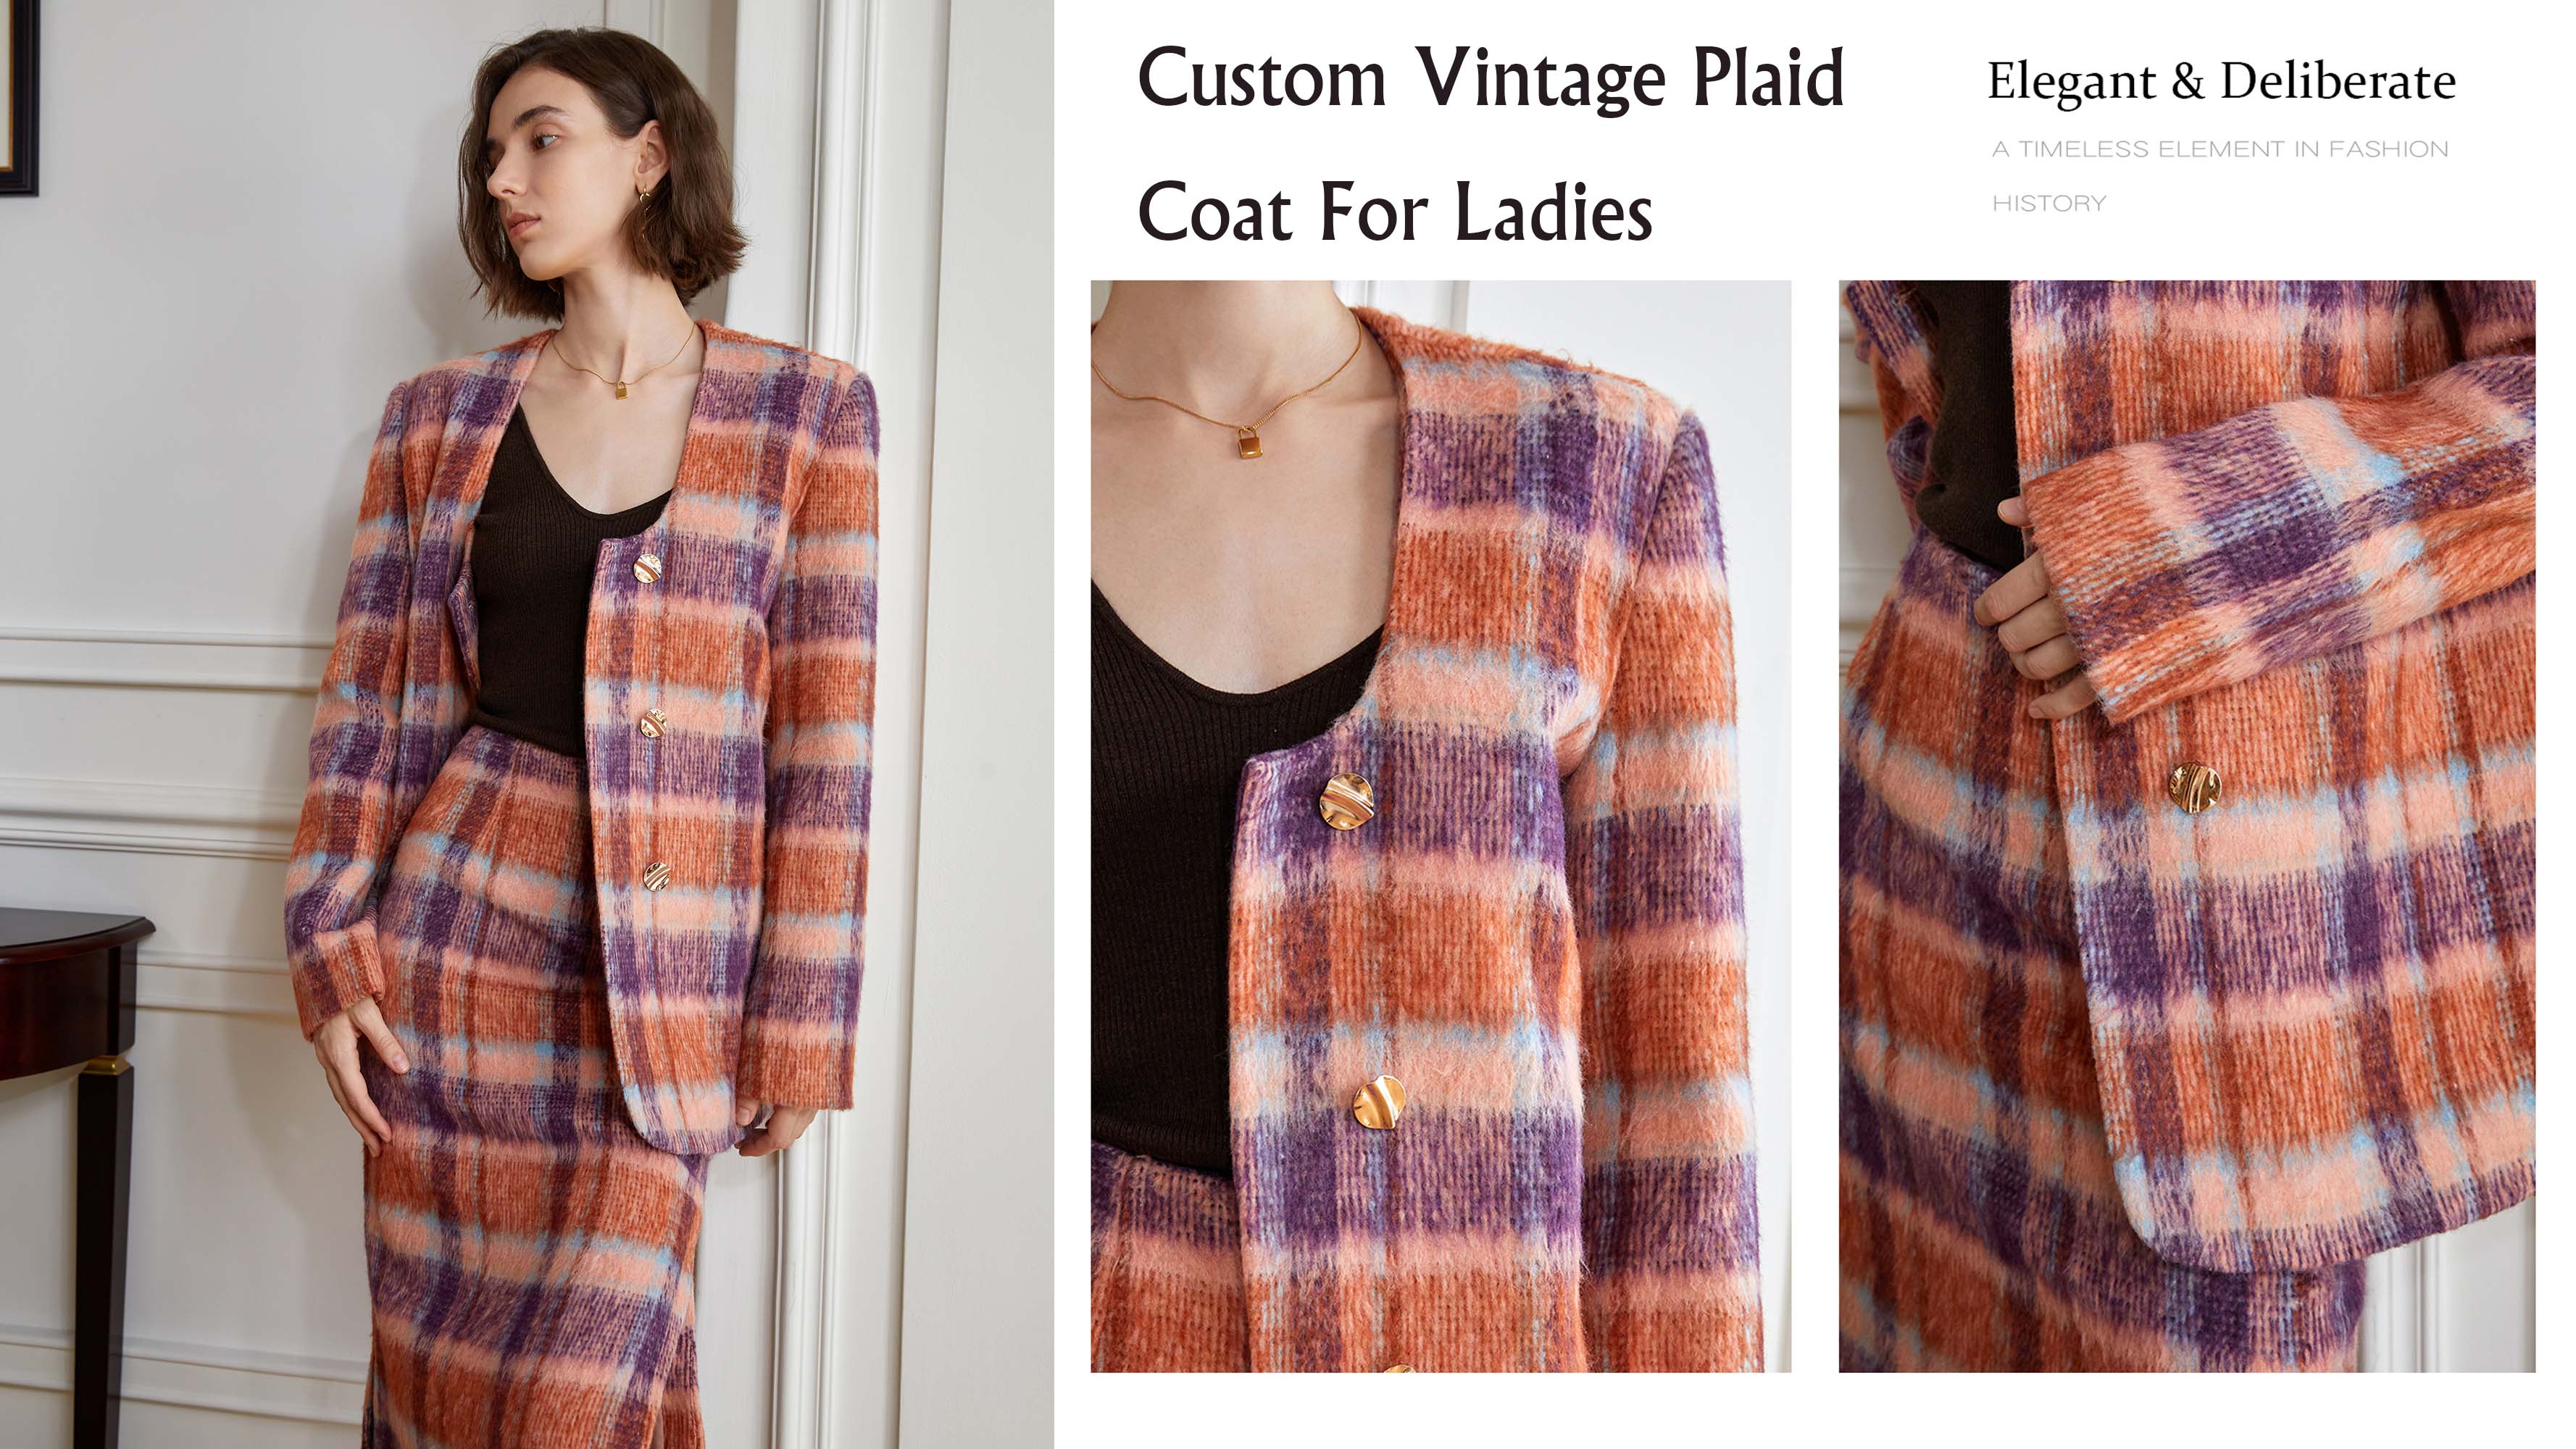 Brugerdefineret vintage plaid frakke til damer